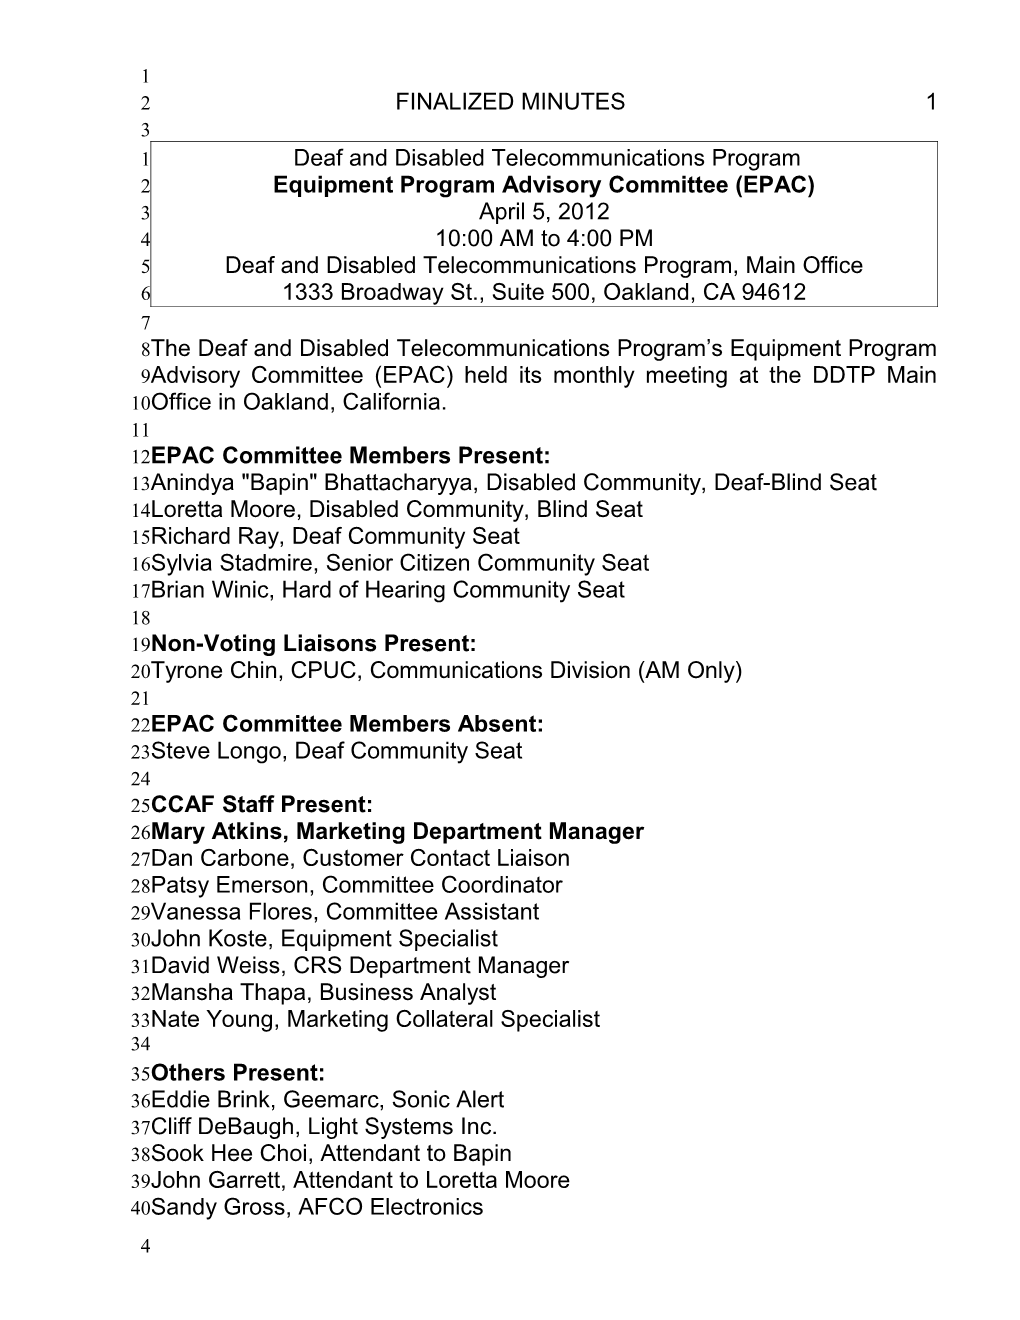 Equipment Program Advisory Committee (EPAC)